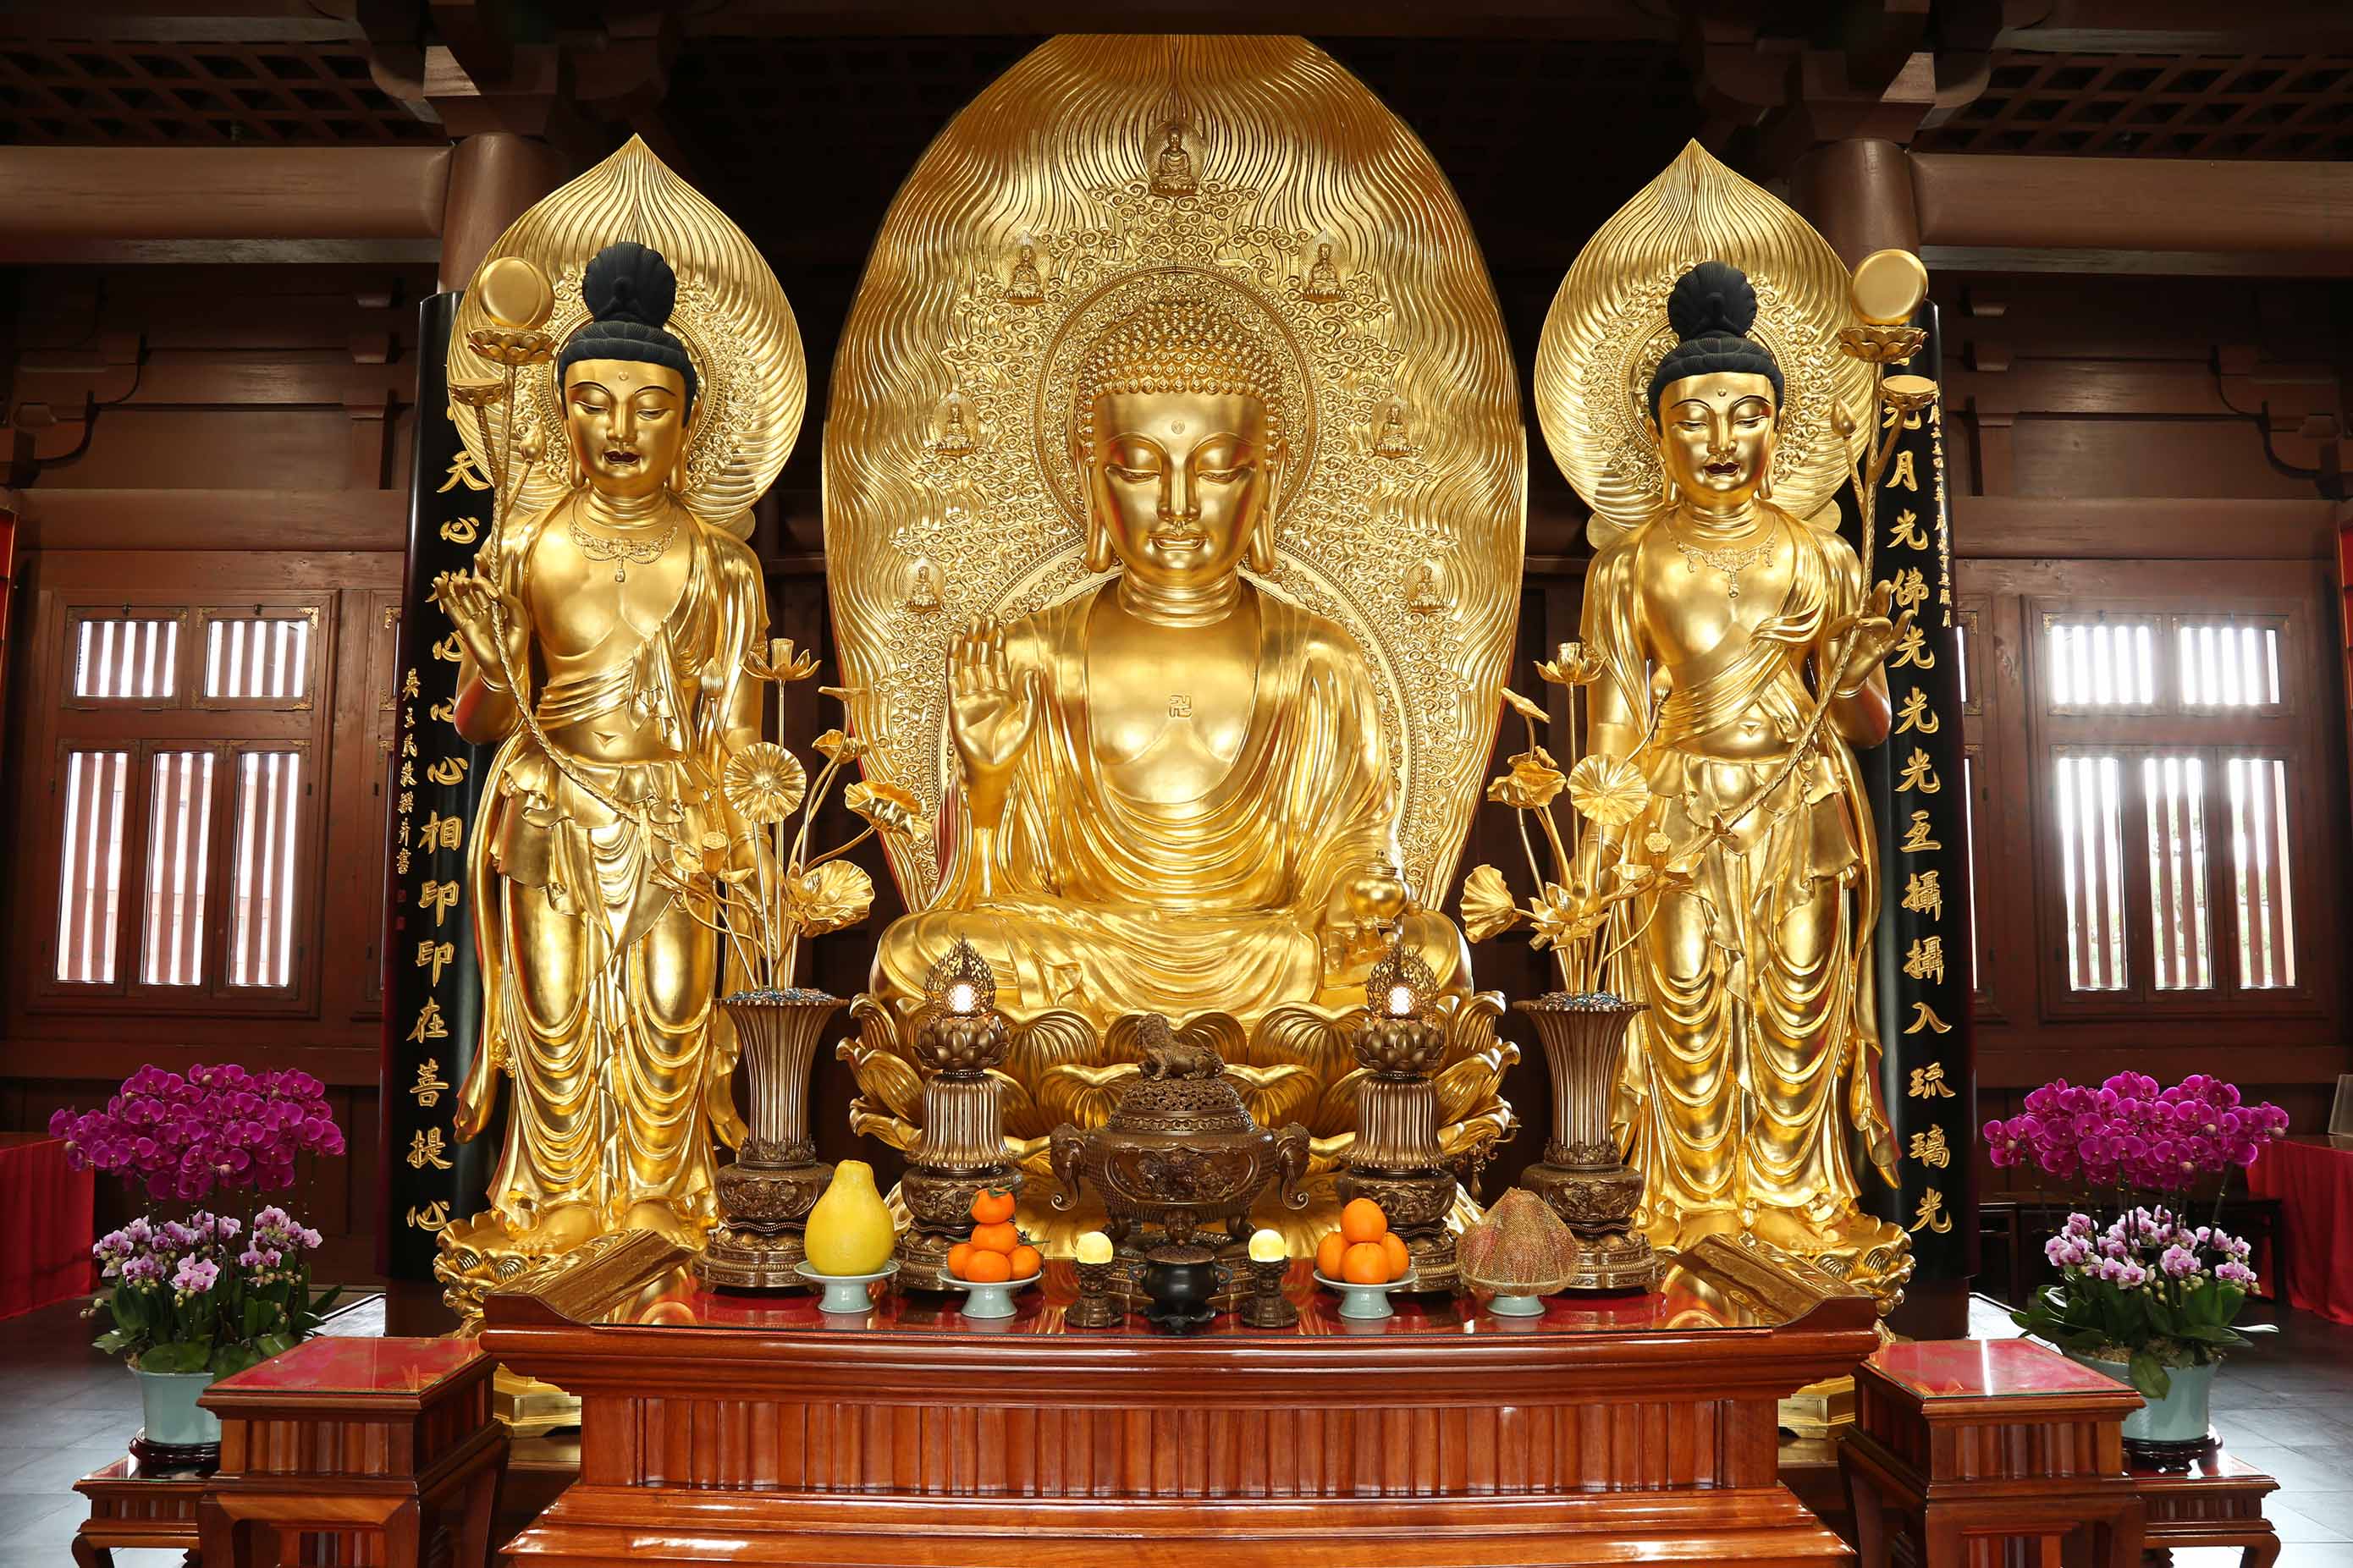 Sūryaprabha (Daylight) Bodhisattva and  Candraprabha (Moonlight) Bodhisattva are attendant bodhisattvas of the gold-plated bronze statue of Bhaiṣajyaguru Buddha